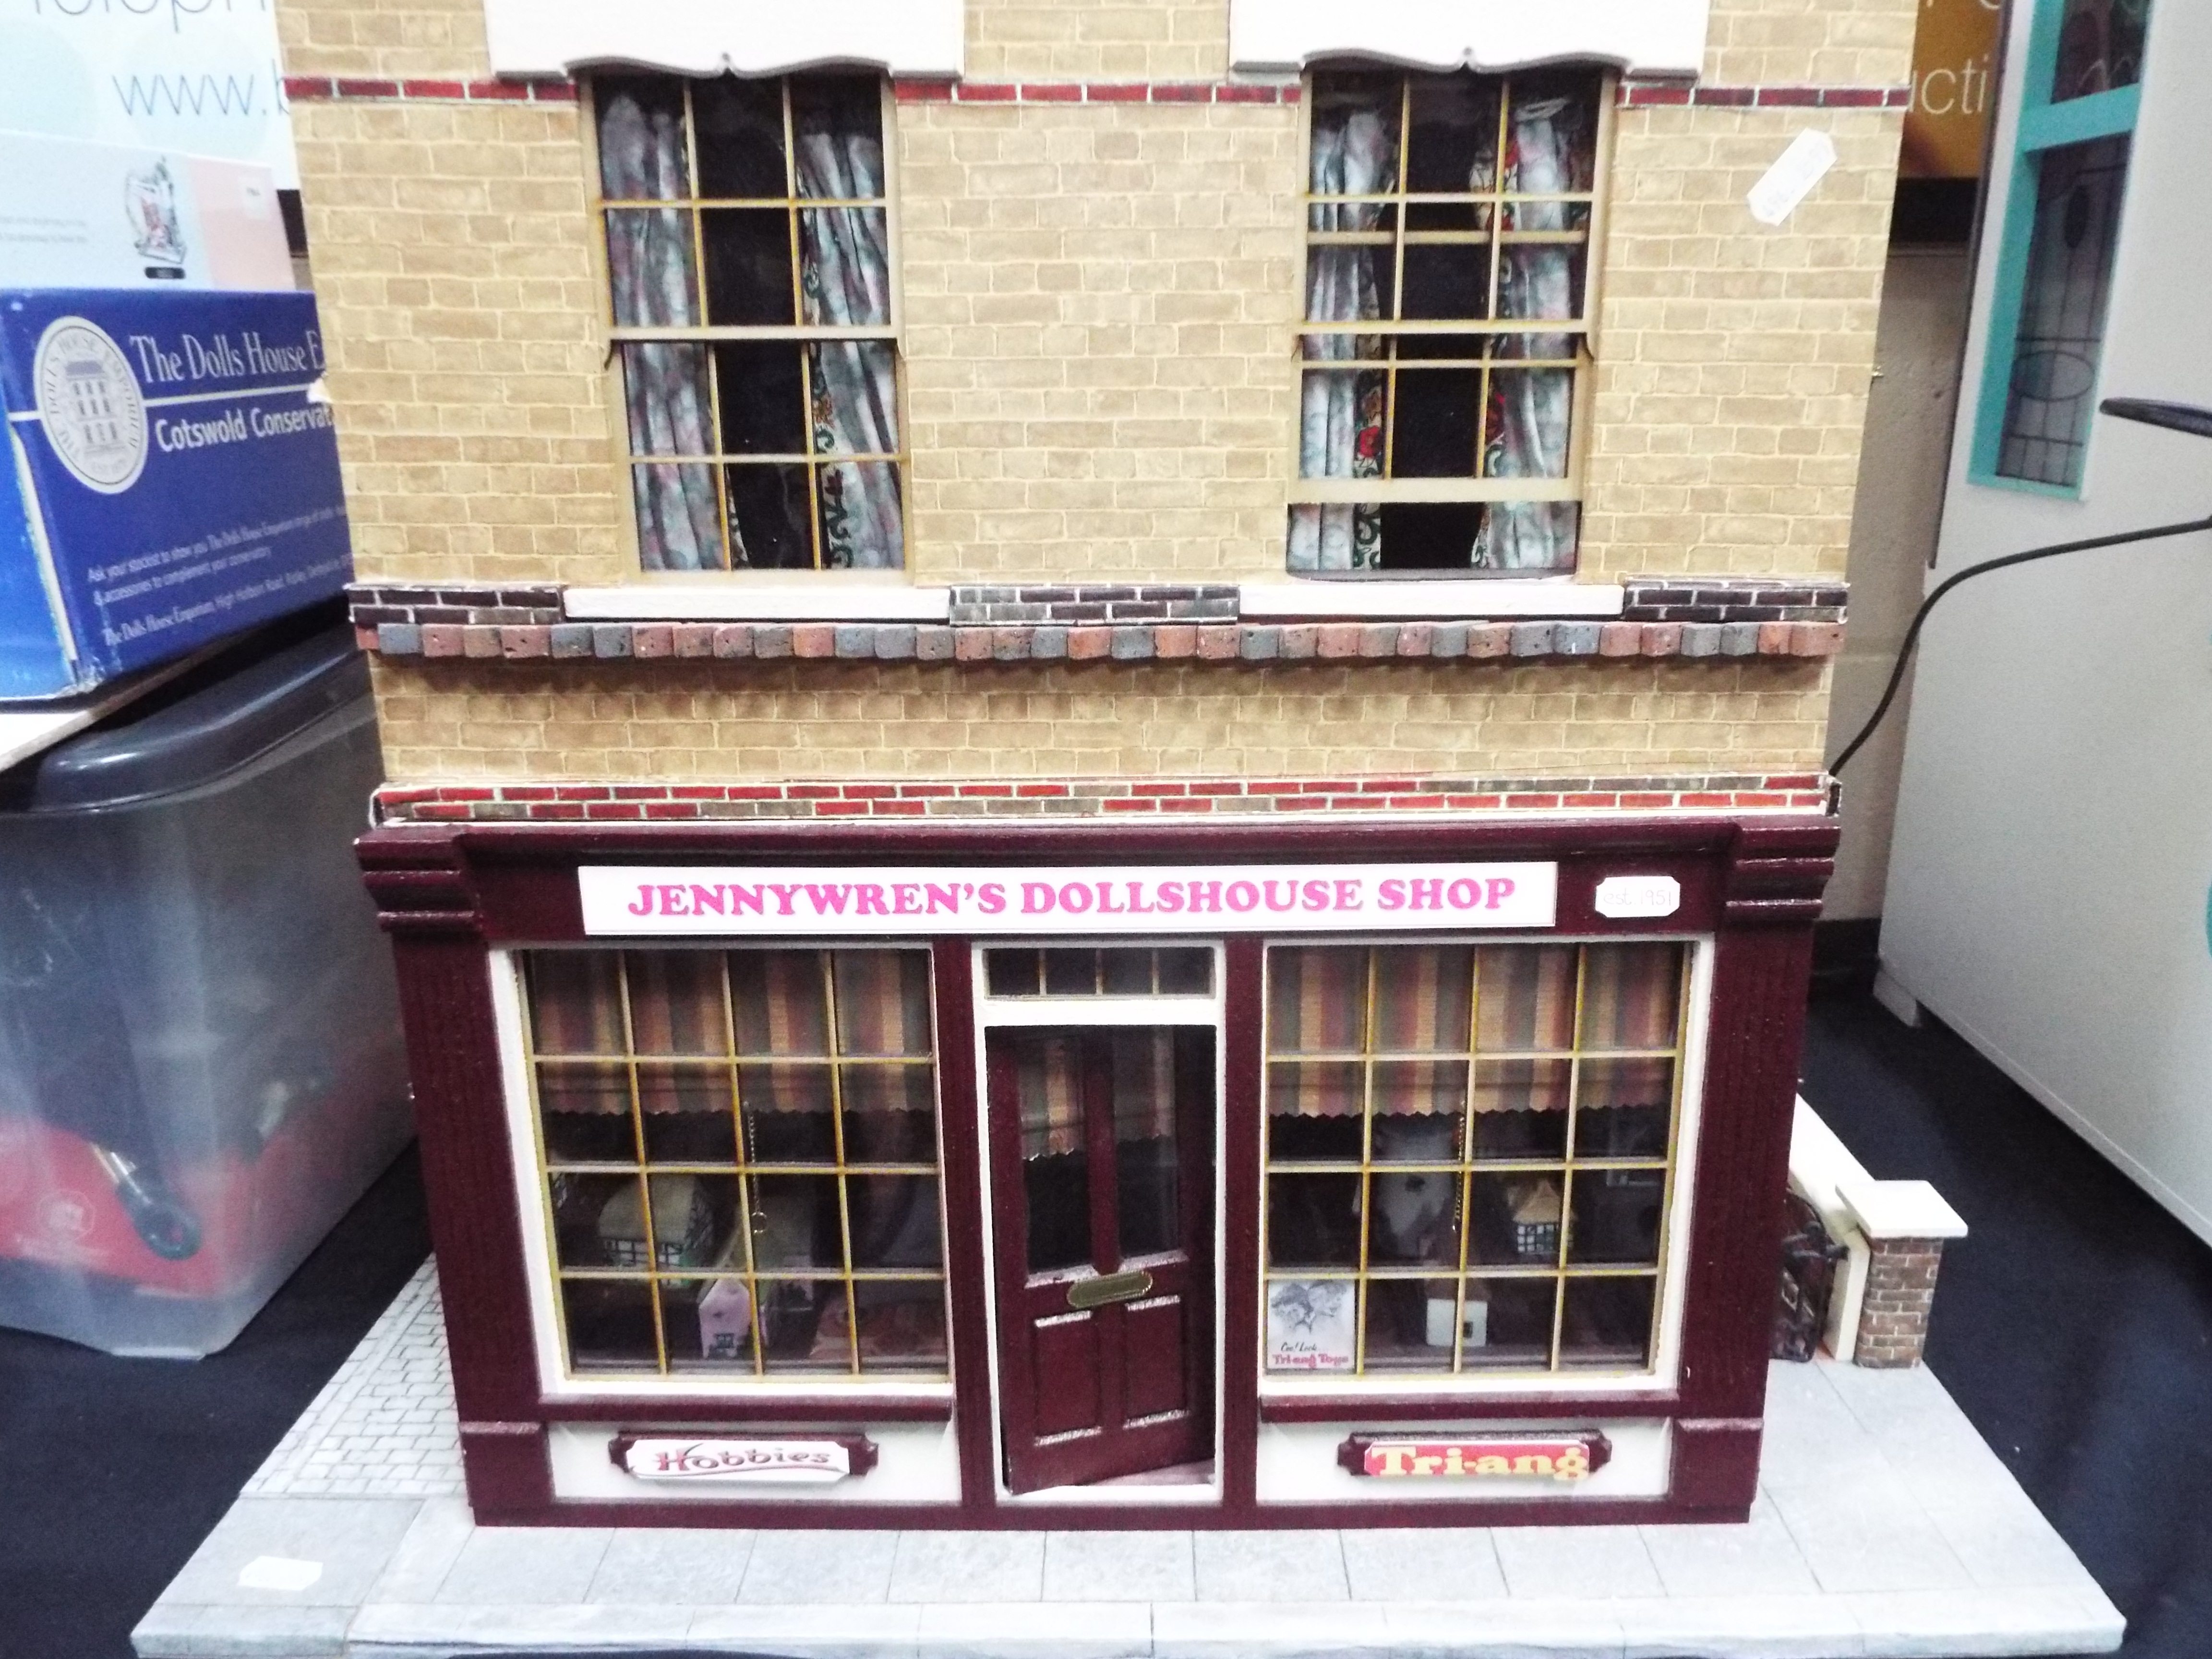 Dolls House - An Edwardian style dolls house shop 'Jennywren's Dolls House Shop'. - Image 3 of 8